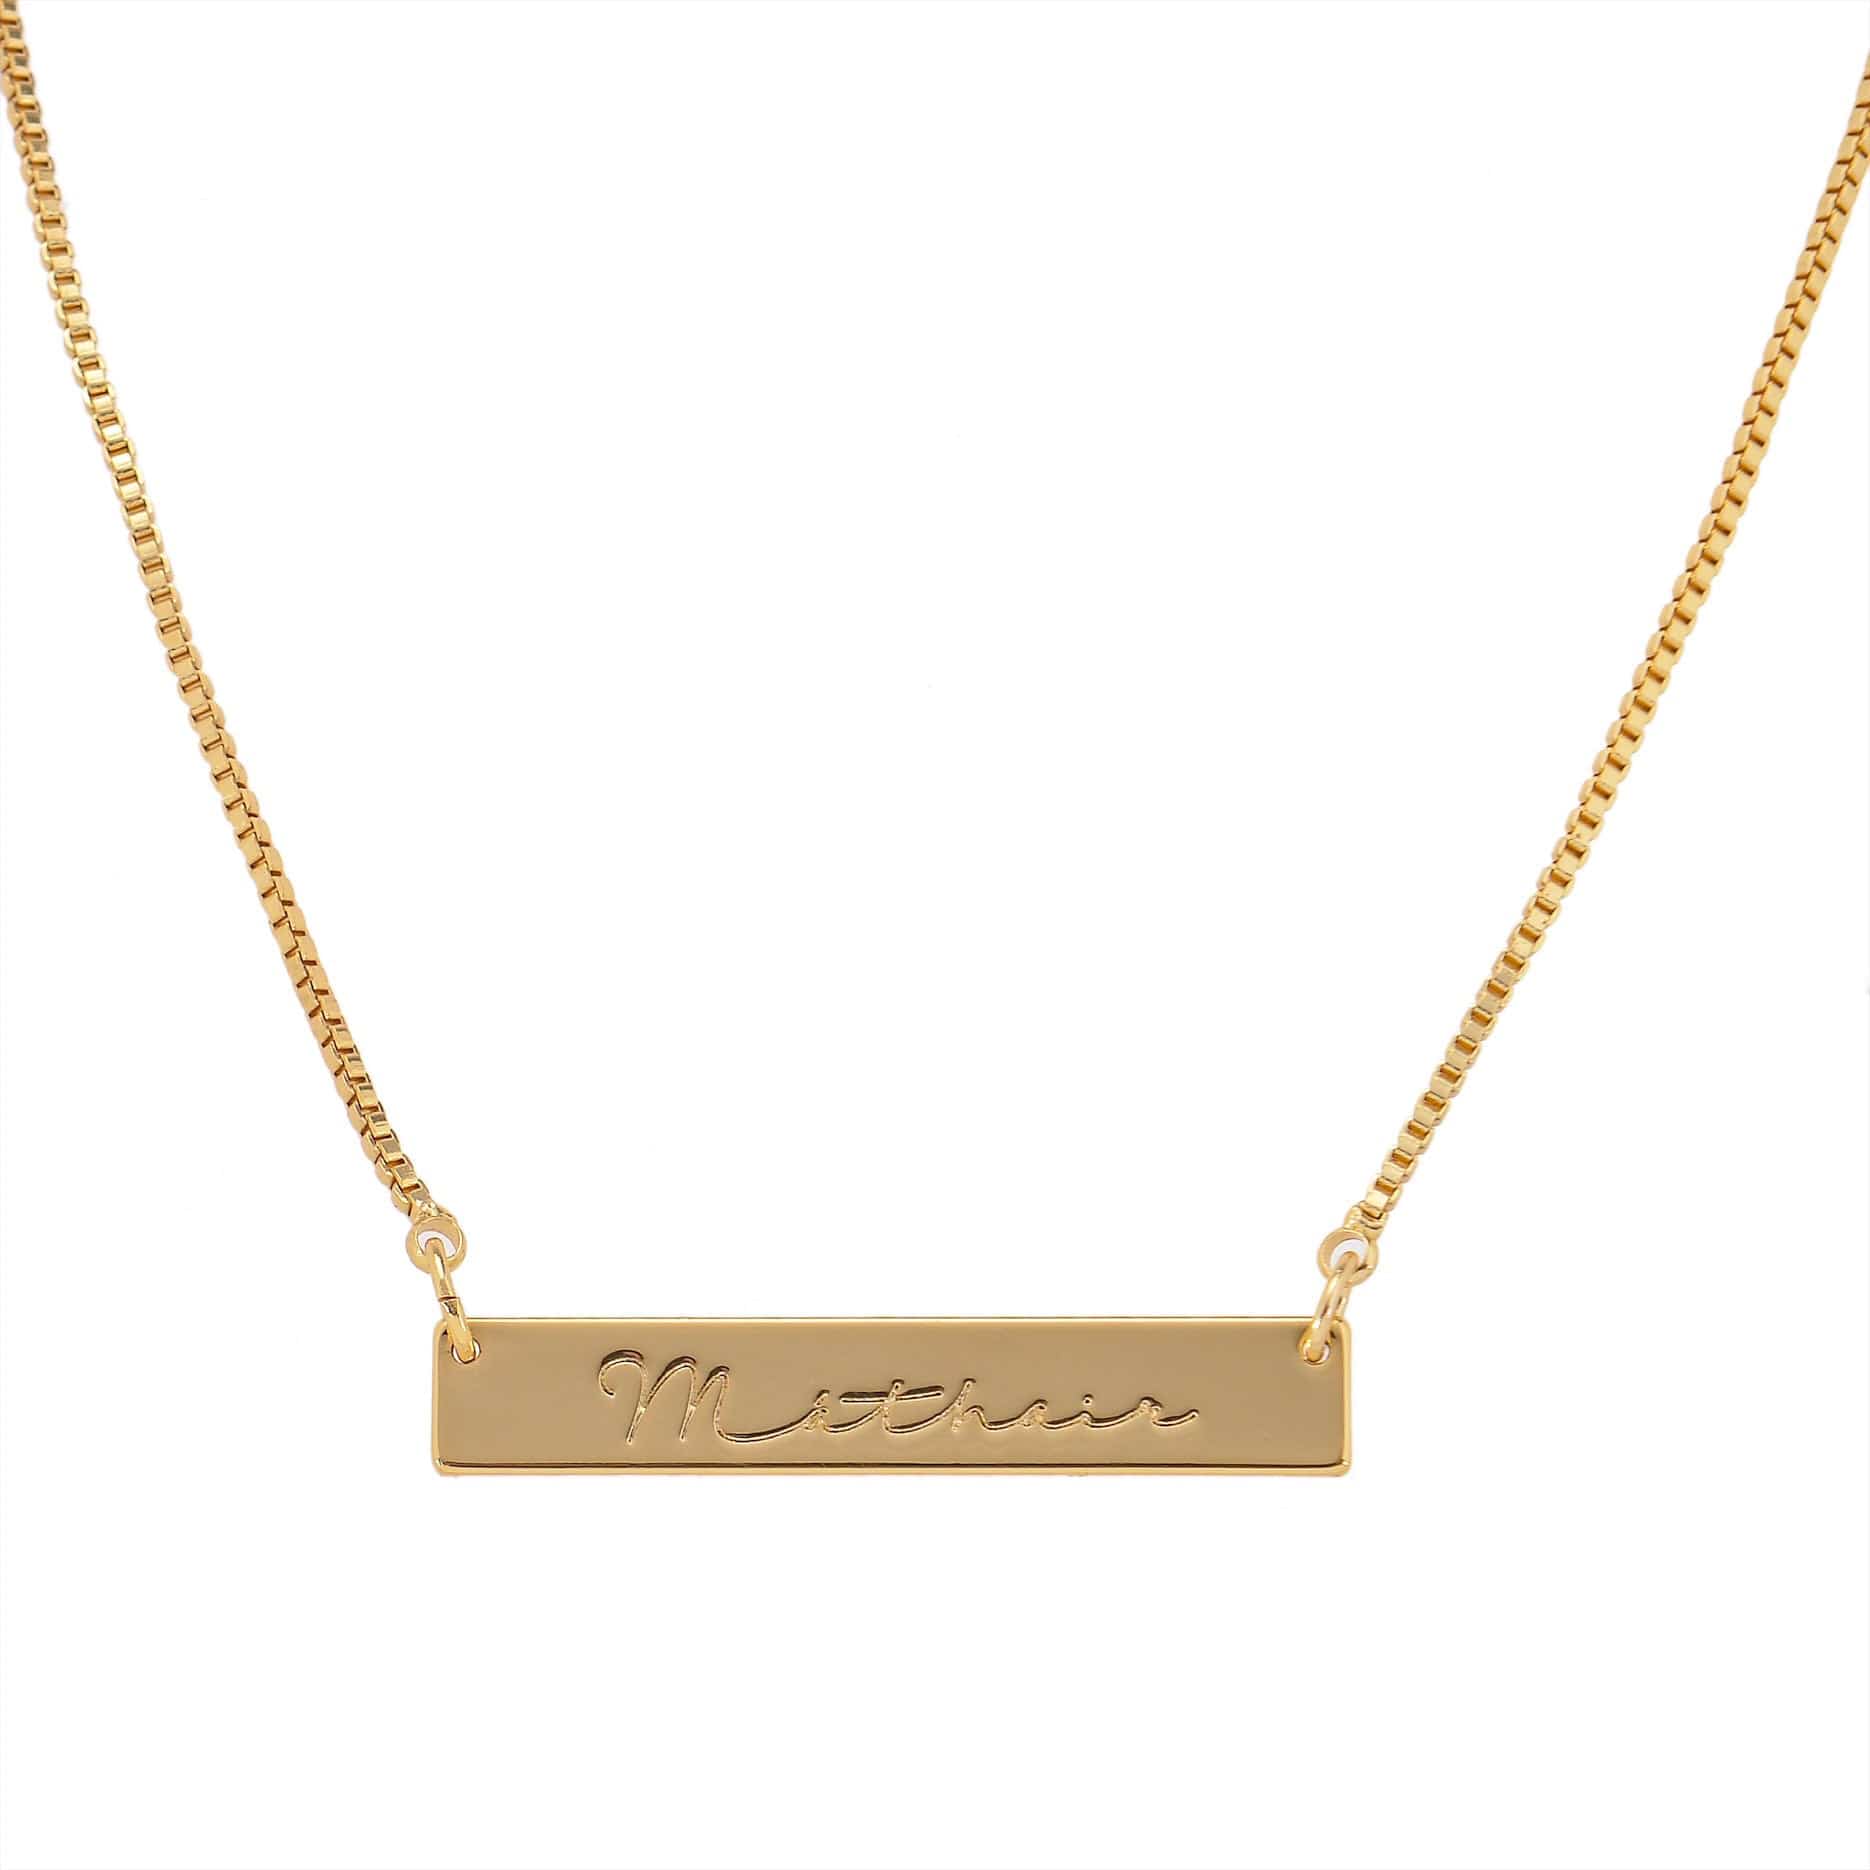 Mathair Mam engraved gold bar necklace